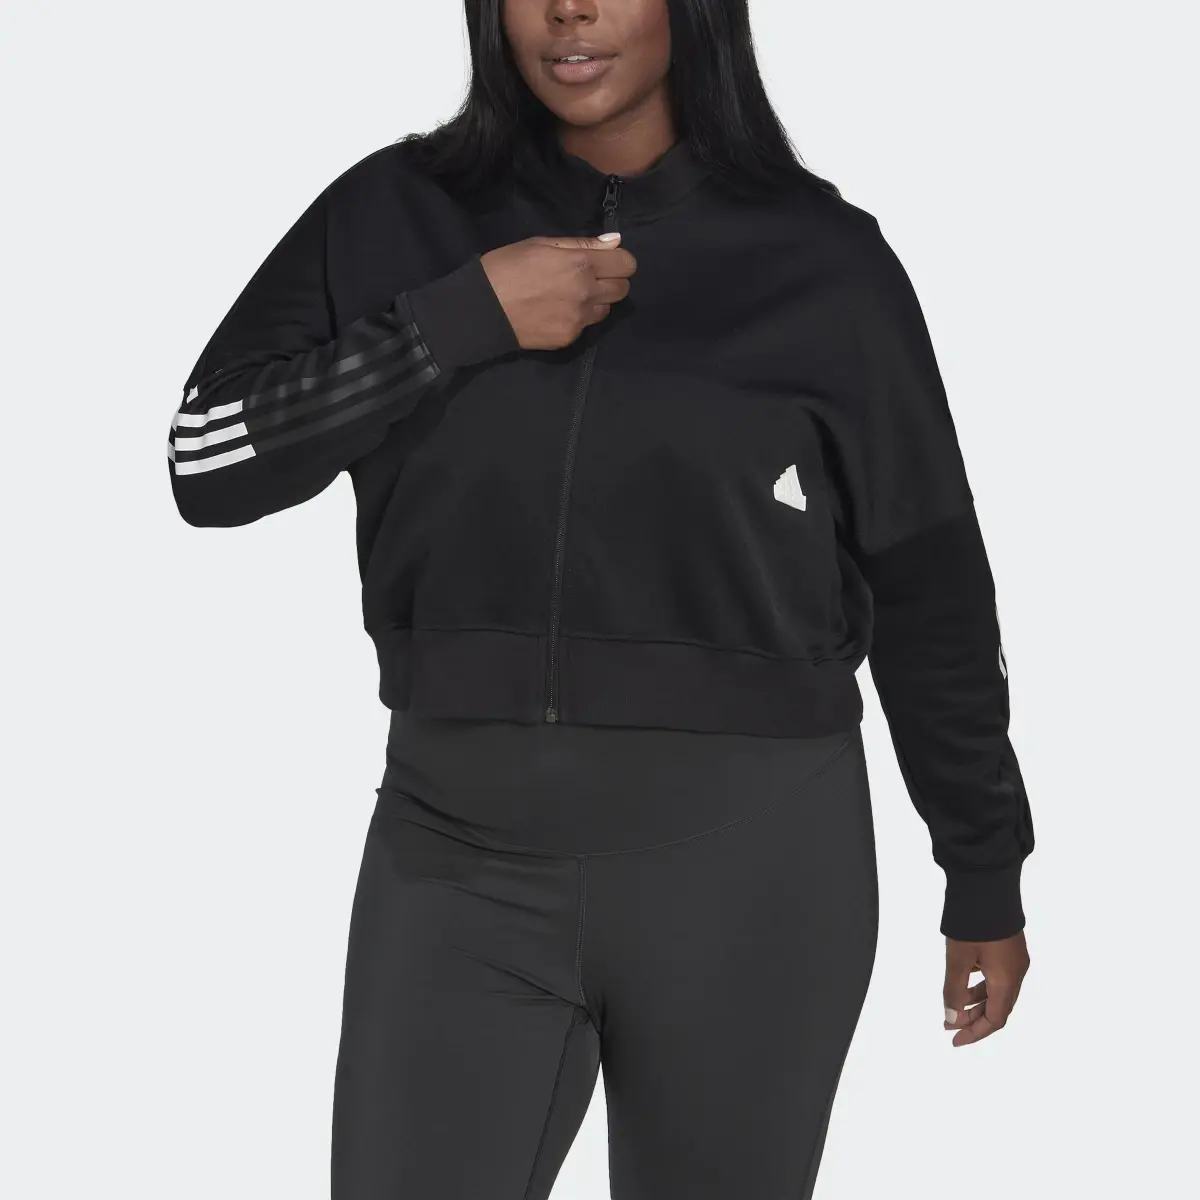 Adidas Cropped Trainingsjacke – Große Größen. 1